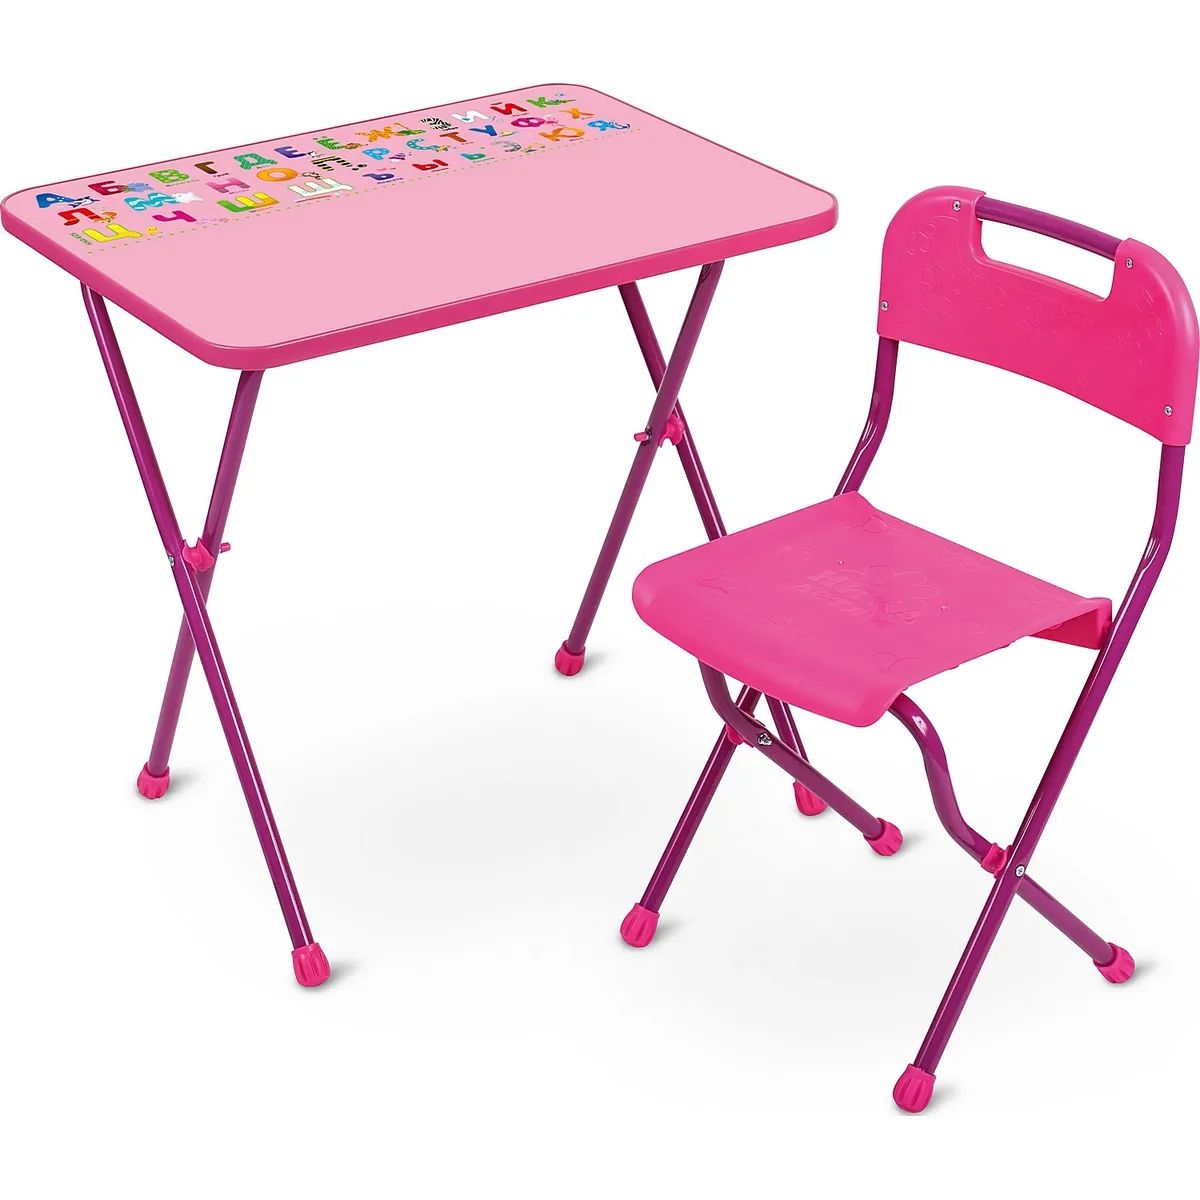 Комплект детской мебели InHome НМИ1, складной, для возраста 3-7 лет, алфавит, розовый